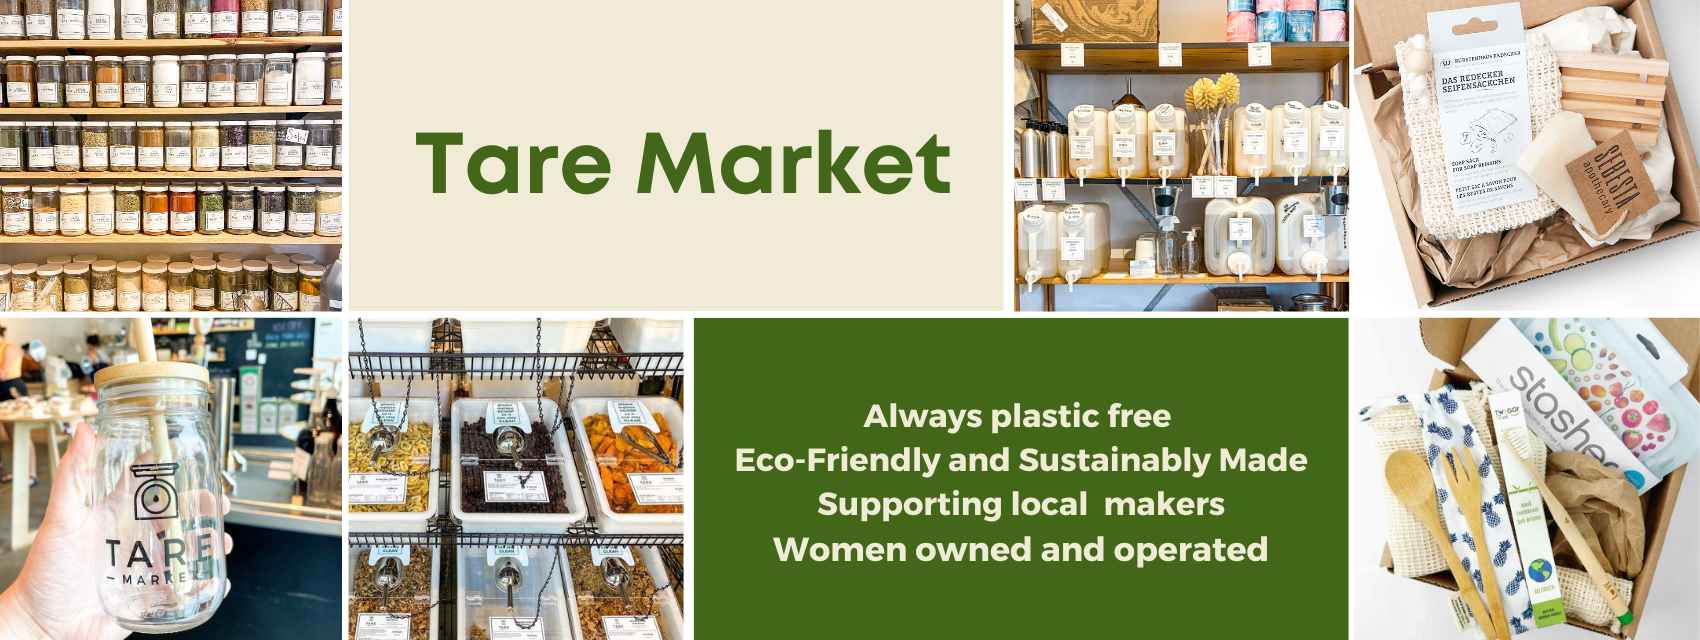 Farmer's Market Shopper Gift & Starter Set — Simple Ecology